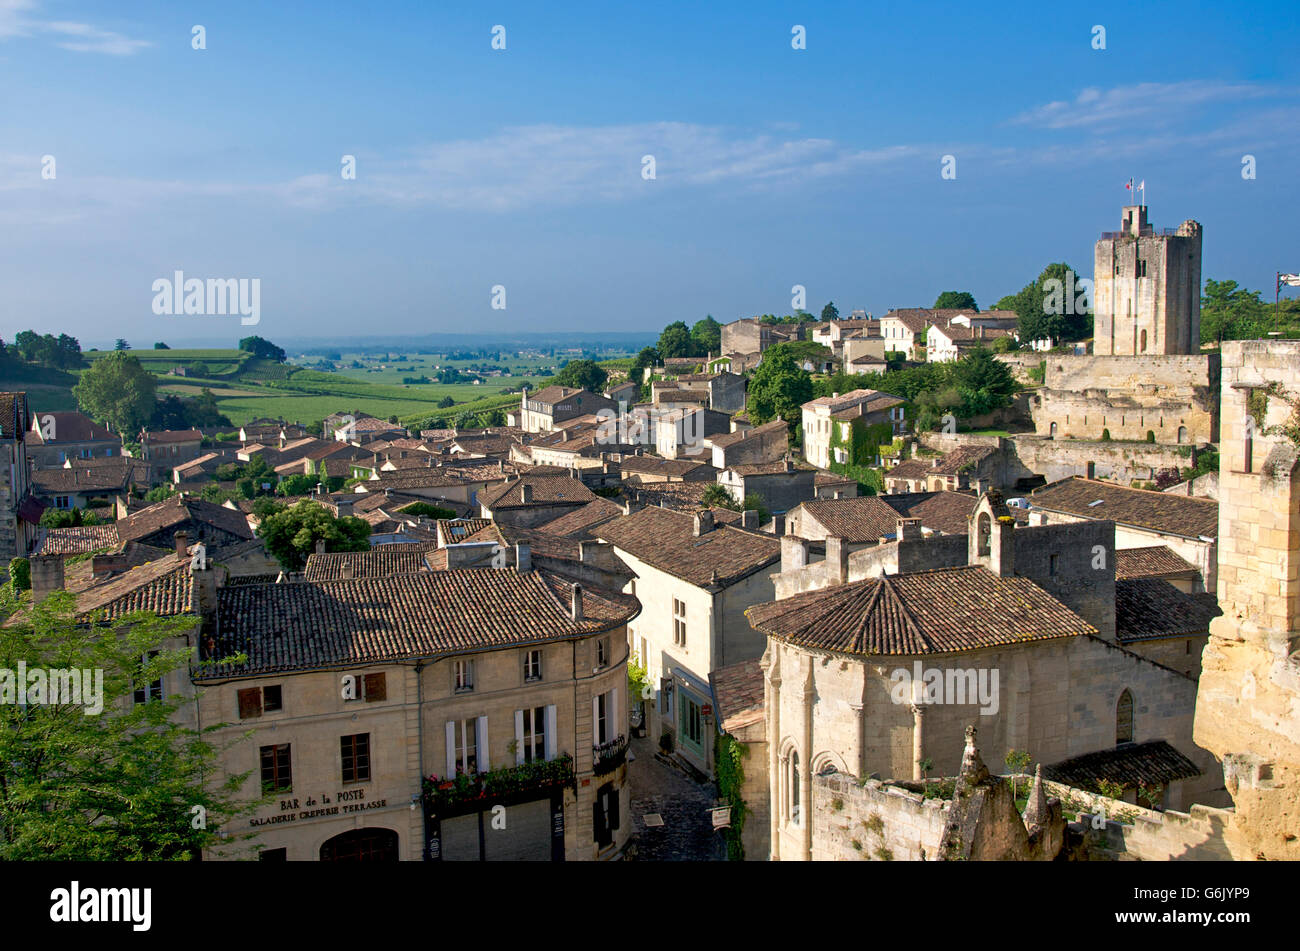 Village of Saint-Emilion, Gironde, Aquitaine, France, Europe Stock Photo